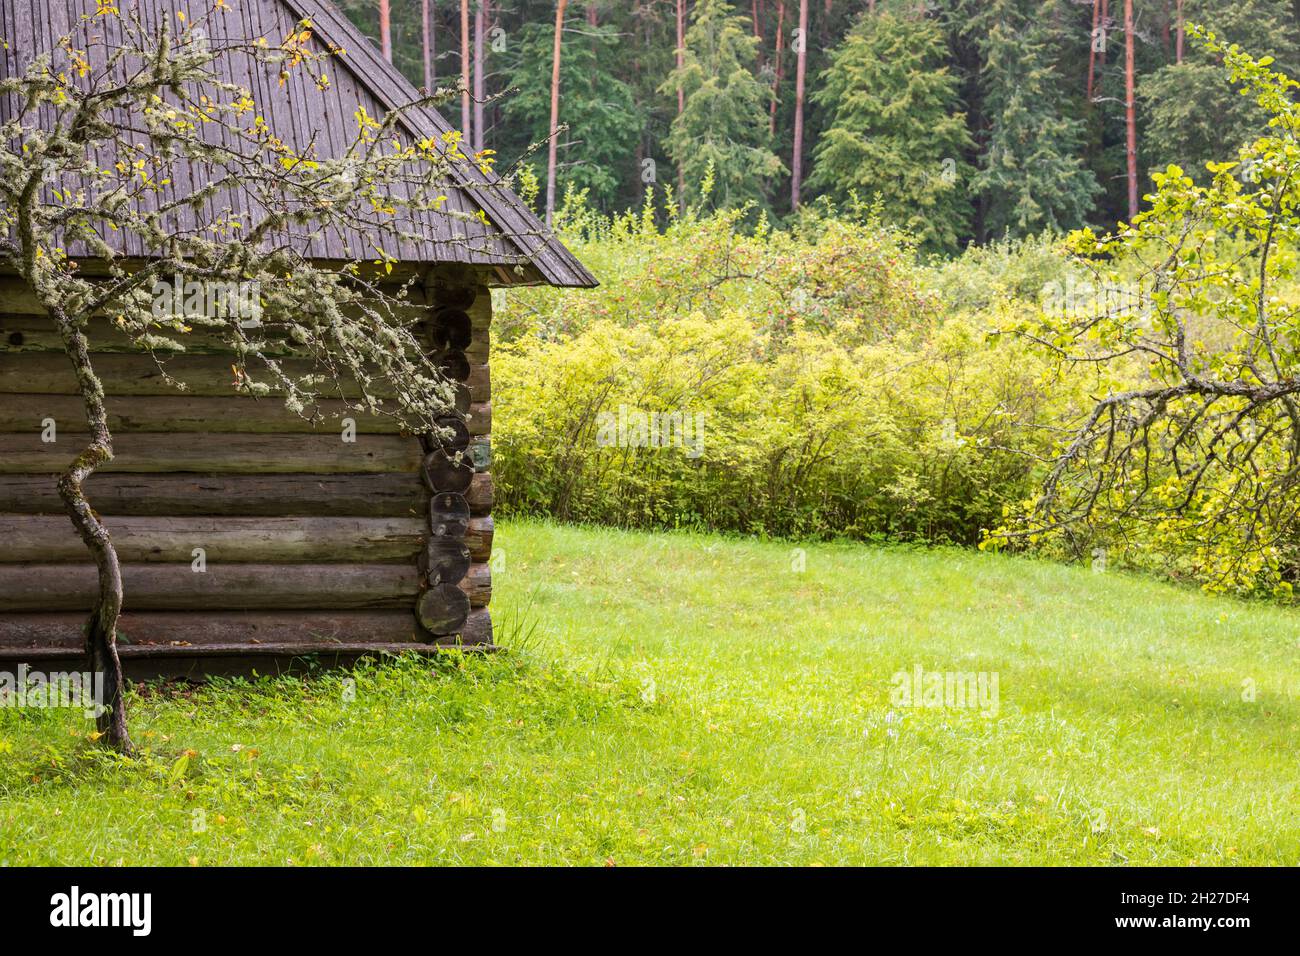 Paysage de village russe avec une ancienne maison en bois et de l'herbe verte Banque D'Images